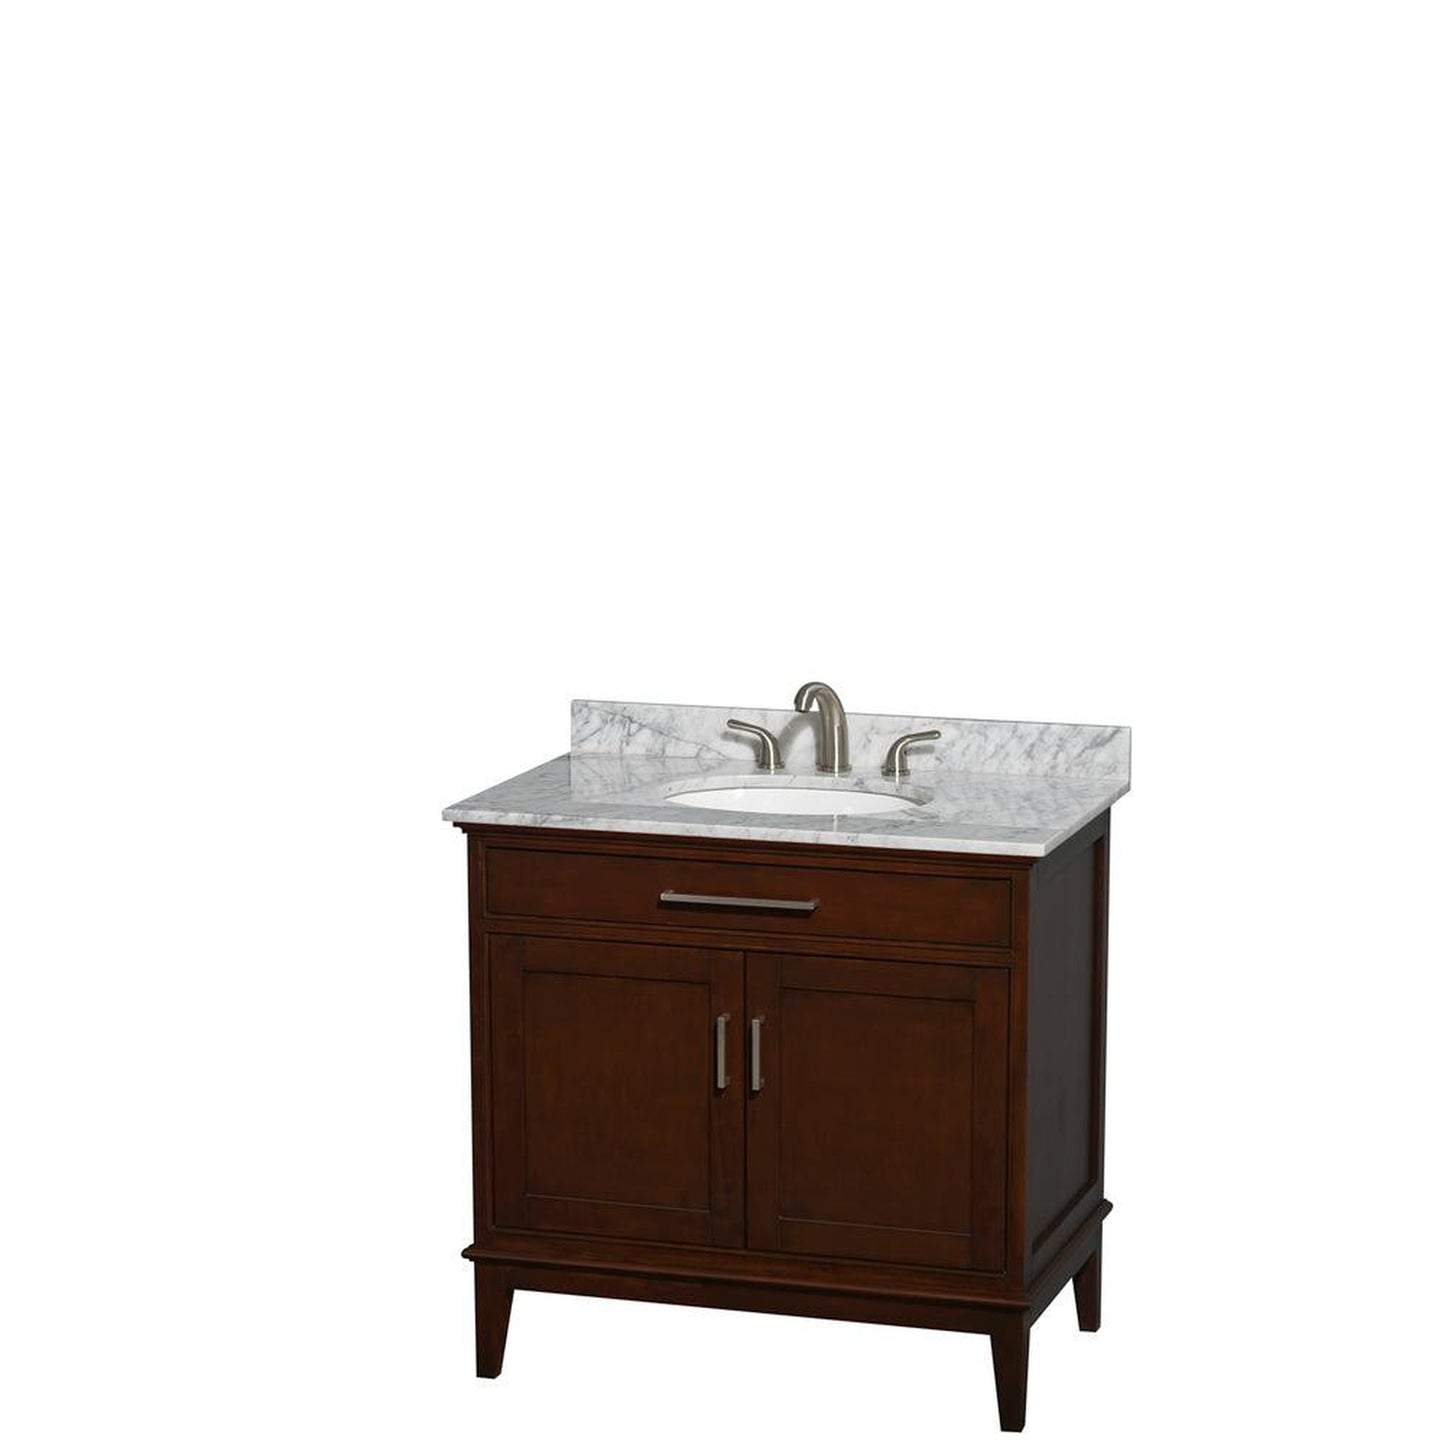 Wyndham Collection Hatton 36" Single Bathroom Vanity in Dark Chestnut, White Carrara Marble Countertop, Undermount Oval Sink, and No Mirror